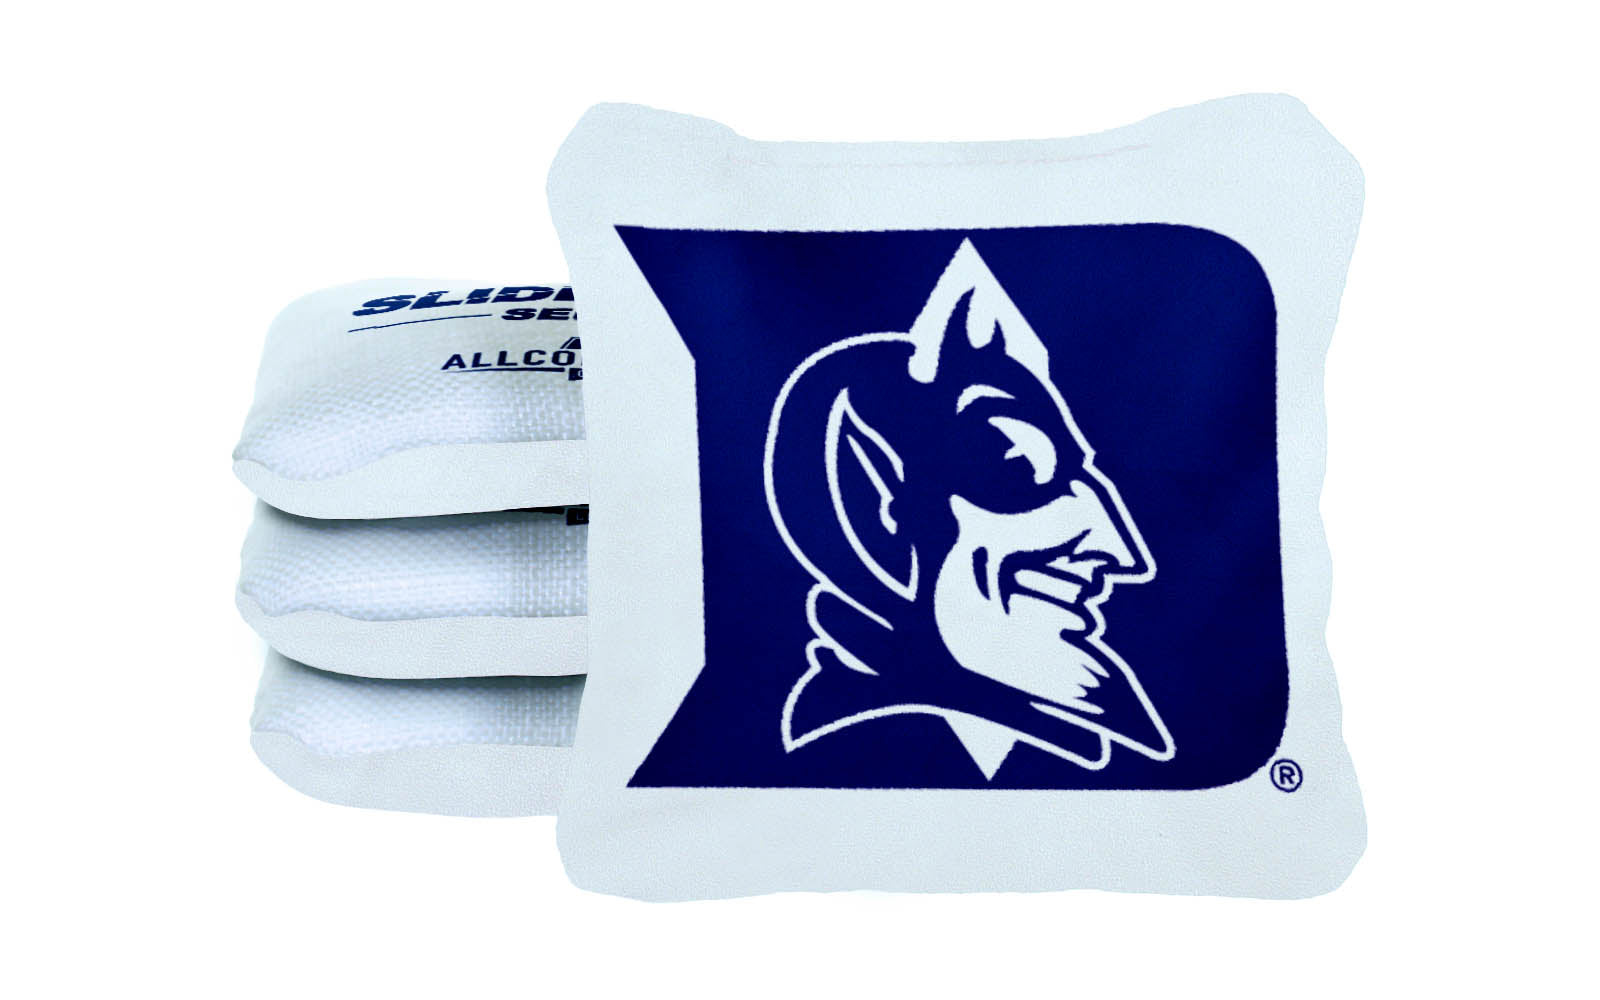 Officially Licensed Collegiate Cornhole Bags - AllCornhole Slide Rite - Set of 4 - Duke University